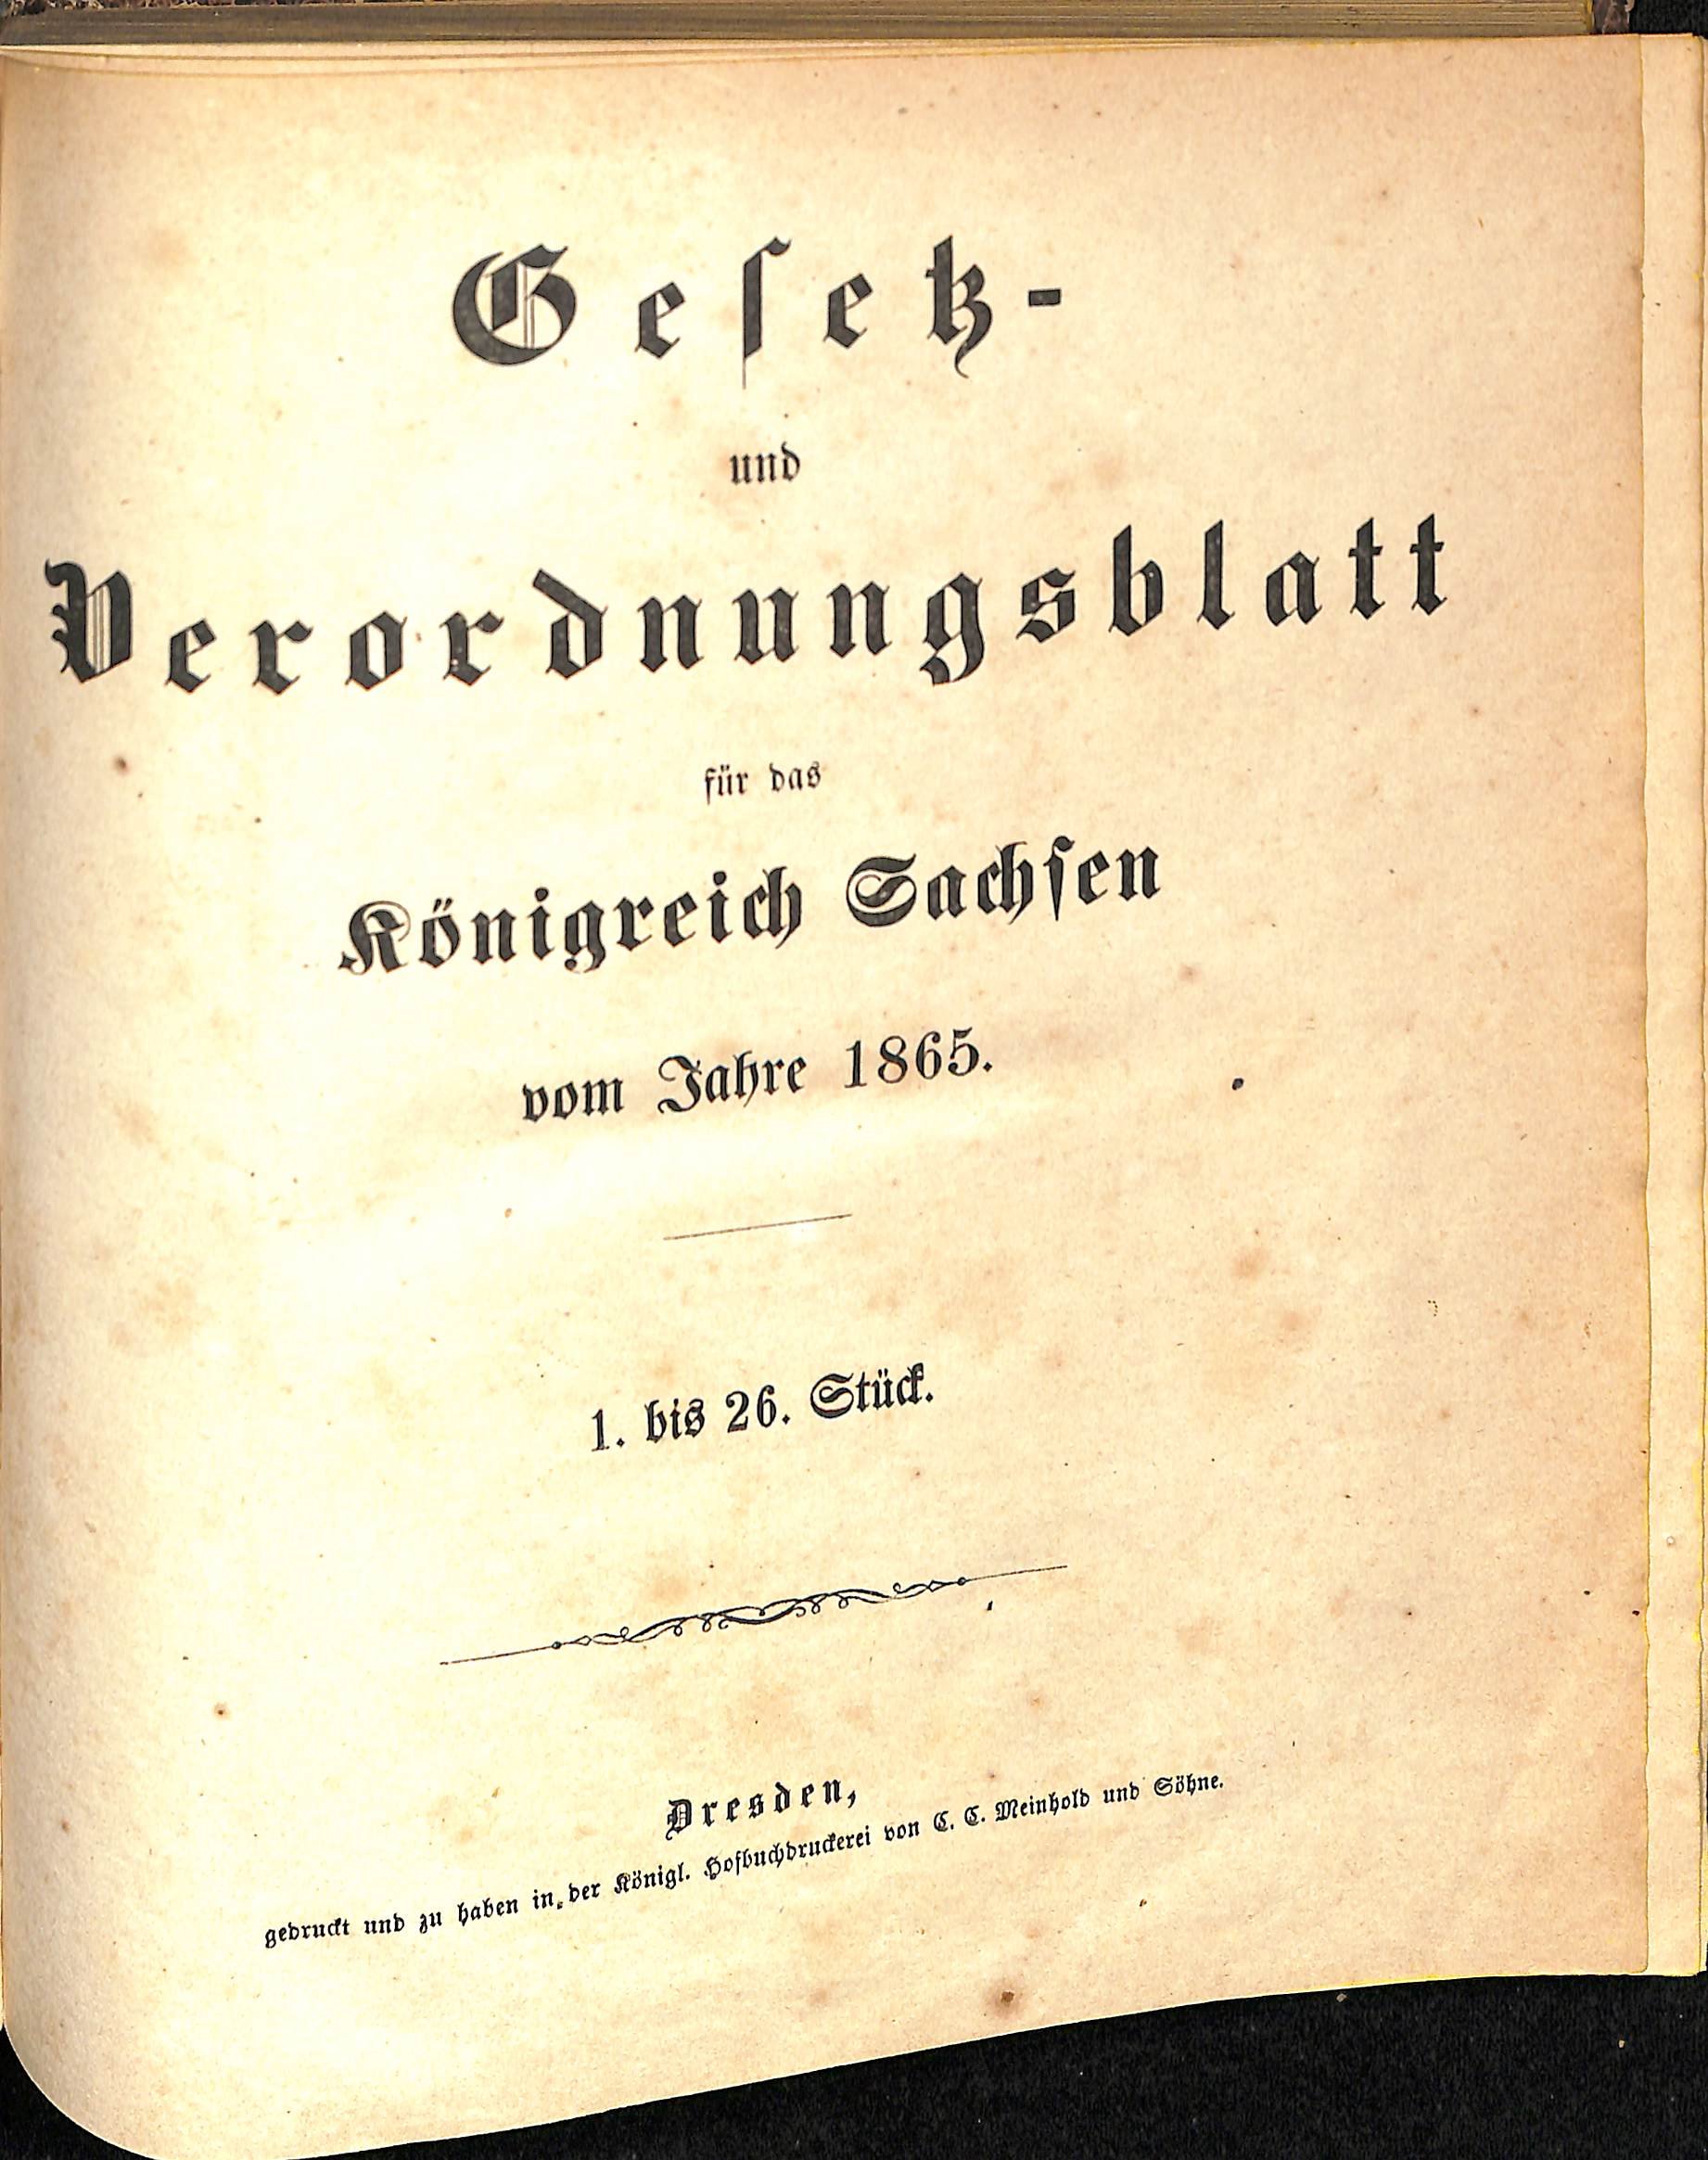 Gesetz- und Verordnungsblatt für das Königreich Sachsen vom Jahre 1865 (HEIMATWELTEN Zwönitz - Raritätensammlung Bruno Gebhardt CC BY-NC-SA)